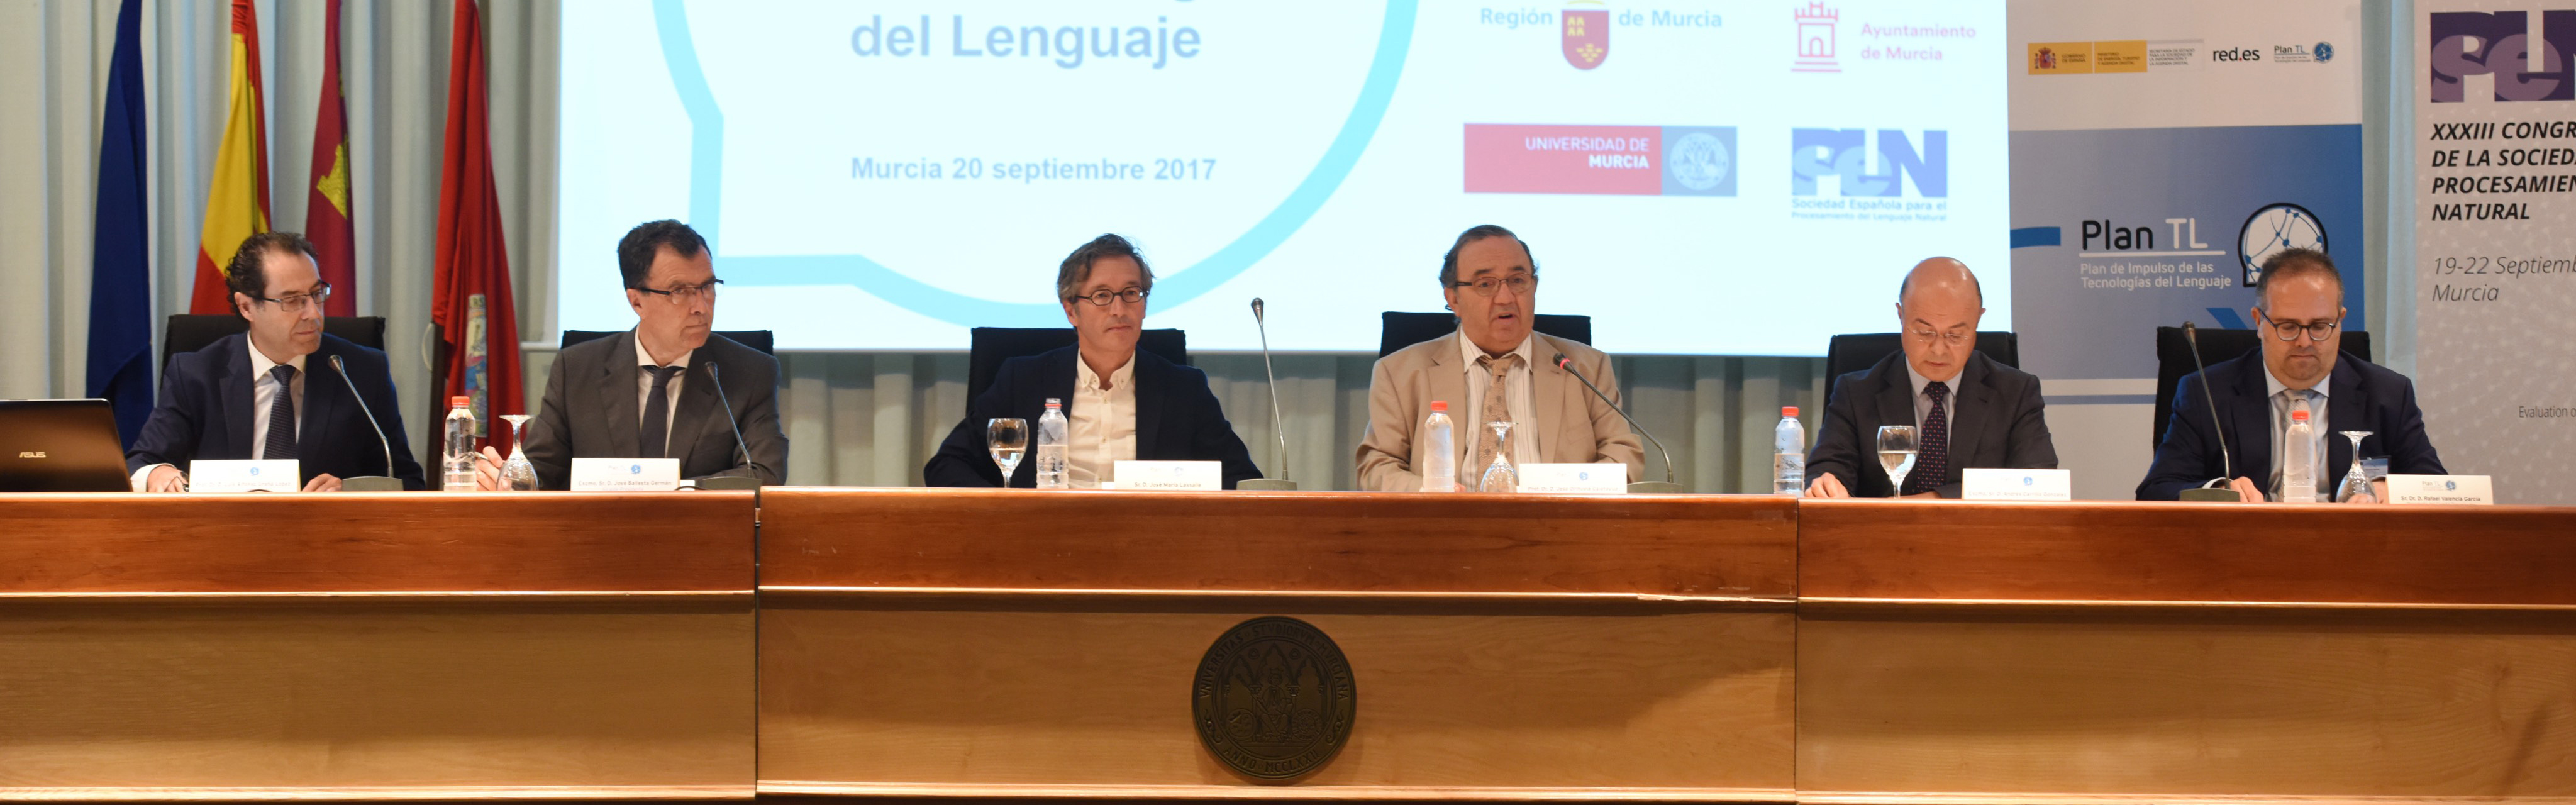 UMU acoge una Jornada sobre aplicaciones de las tecnologías del lenguaje